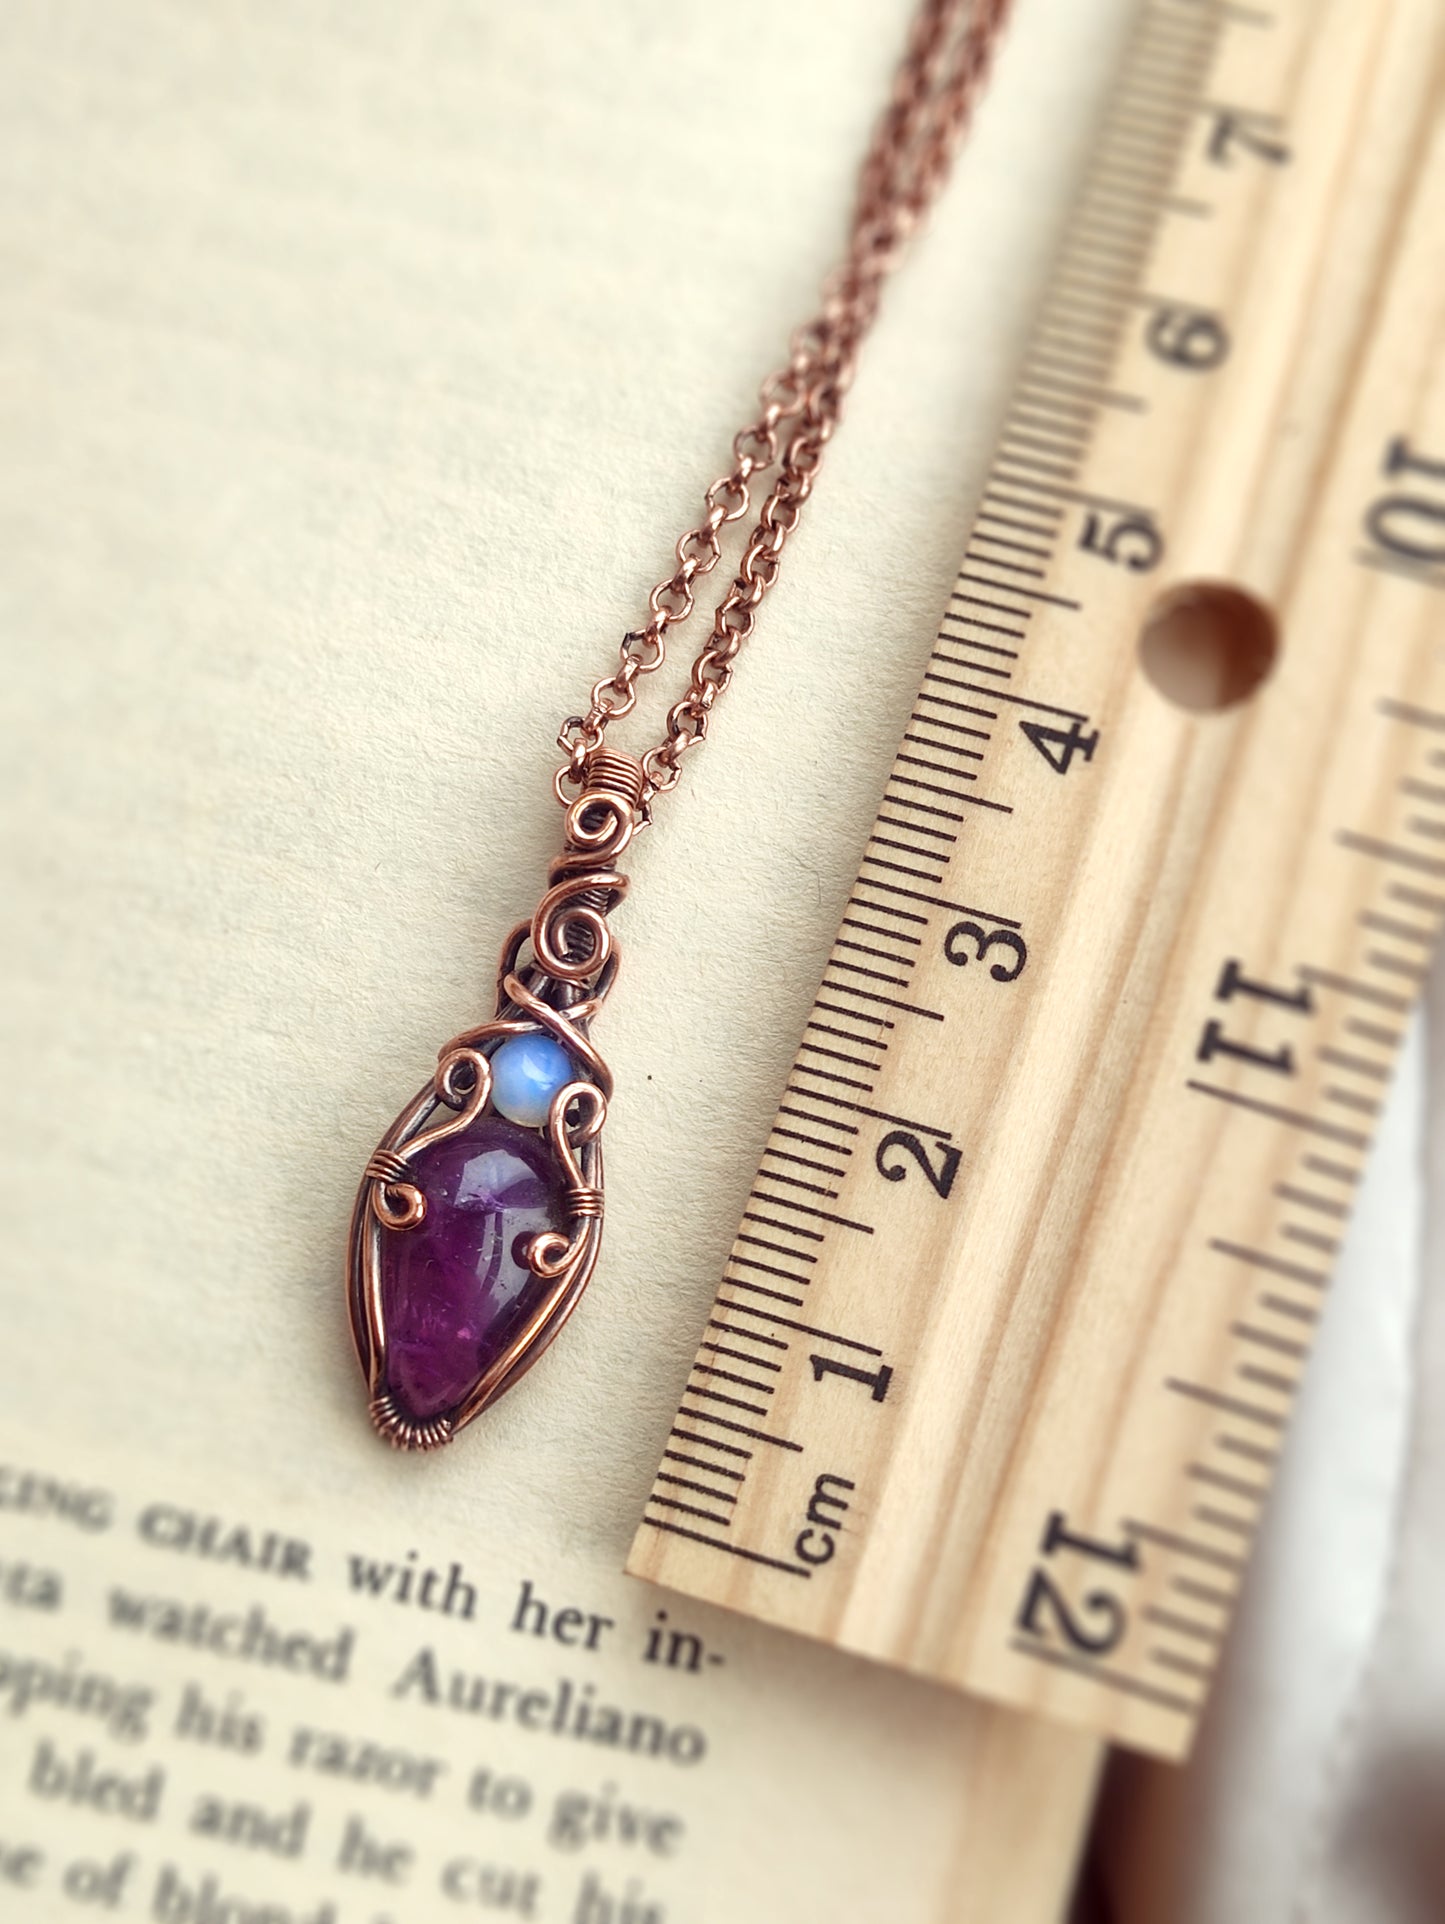 Mini Amethyst & Opalite Teardrop Pendant Necklace in Copper